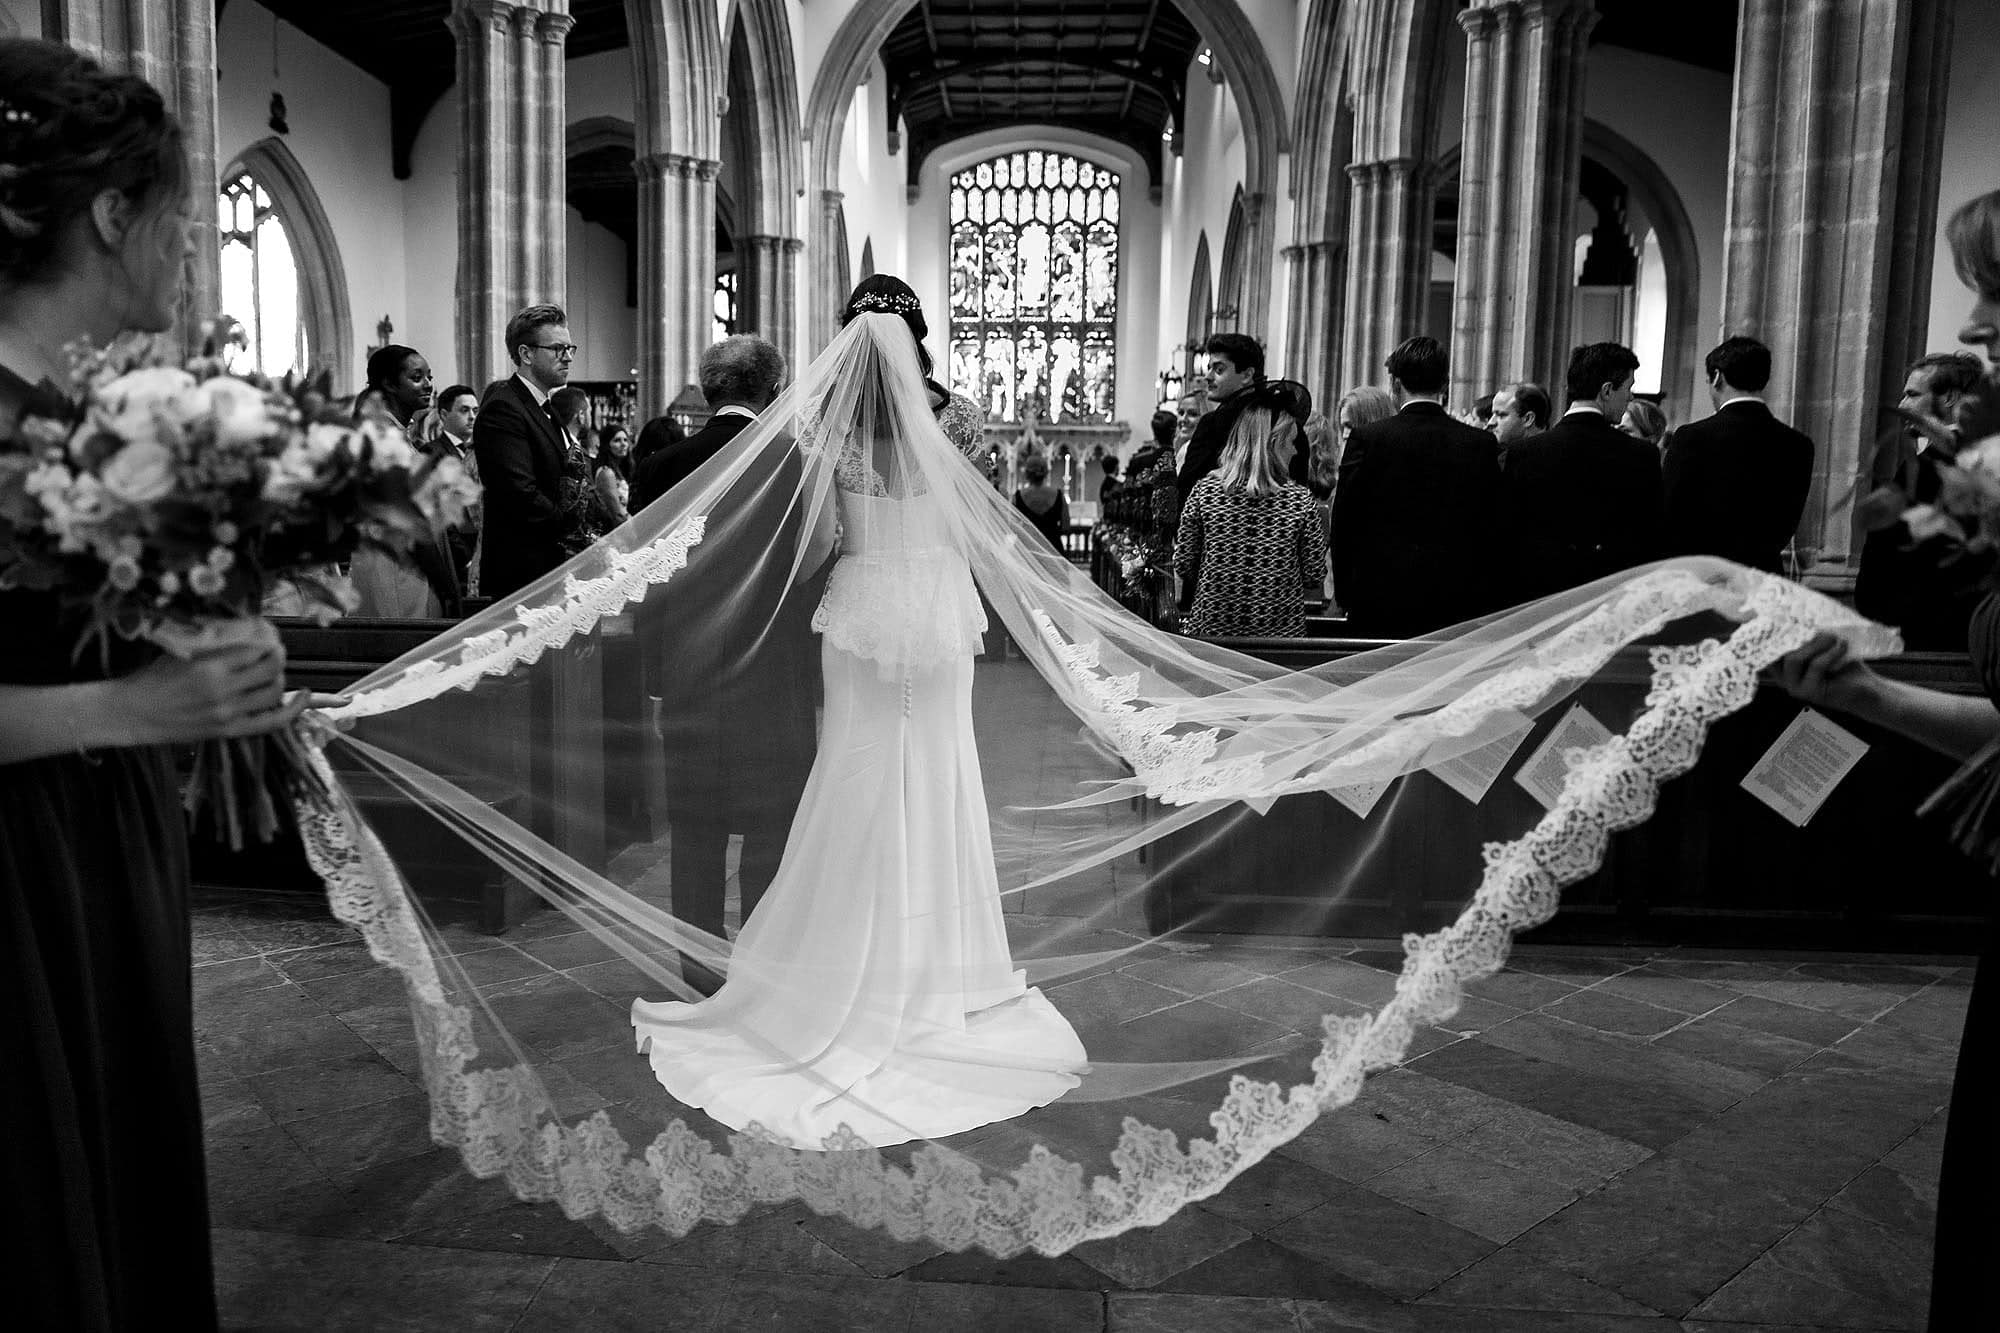 Stoke-by-Nayland Church wedding